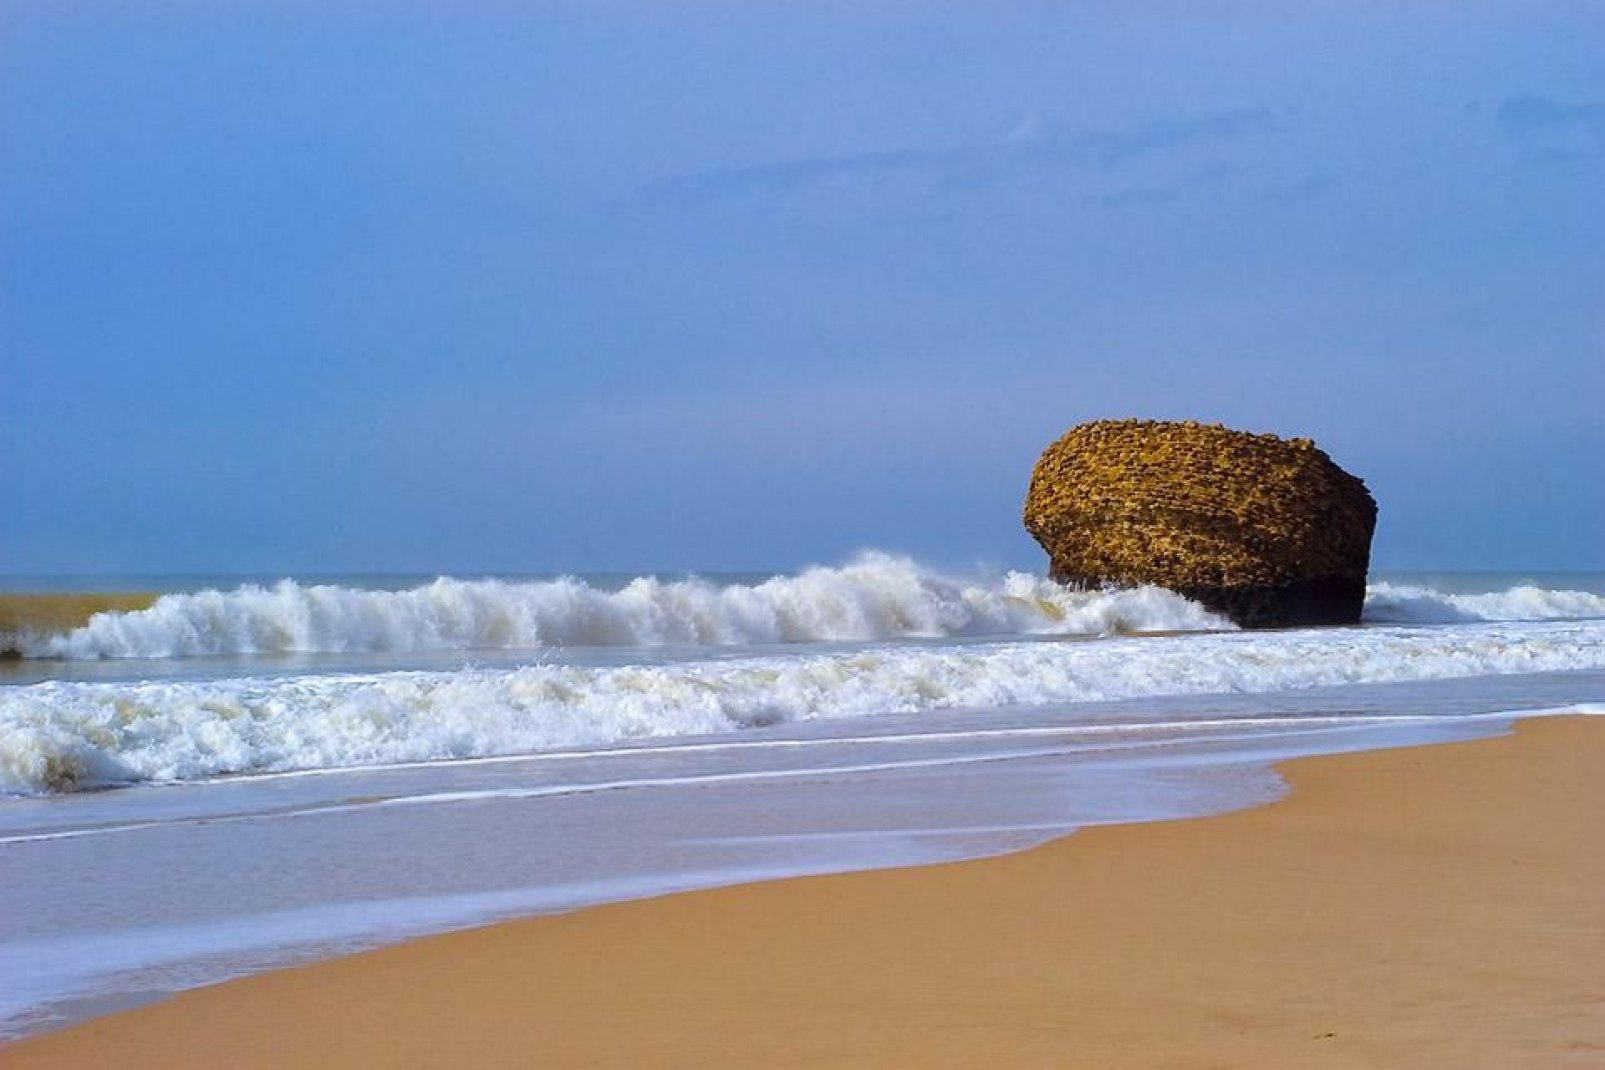 Esta playa de arena fina dorada es muy tranquila gracias a los acantilados que la rodean.